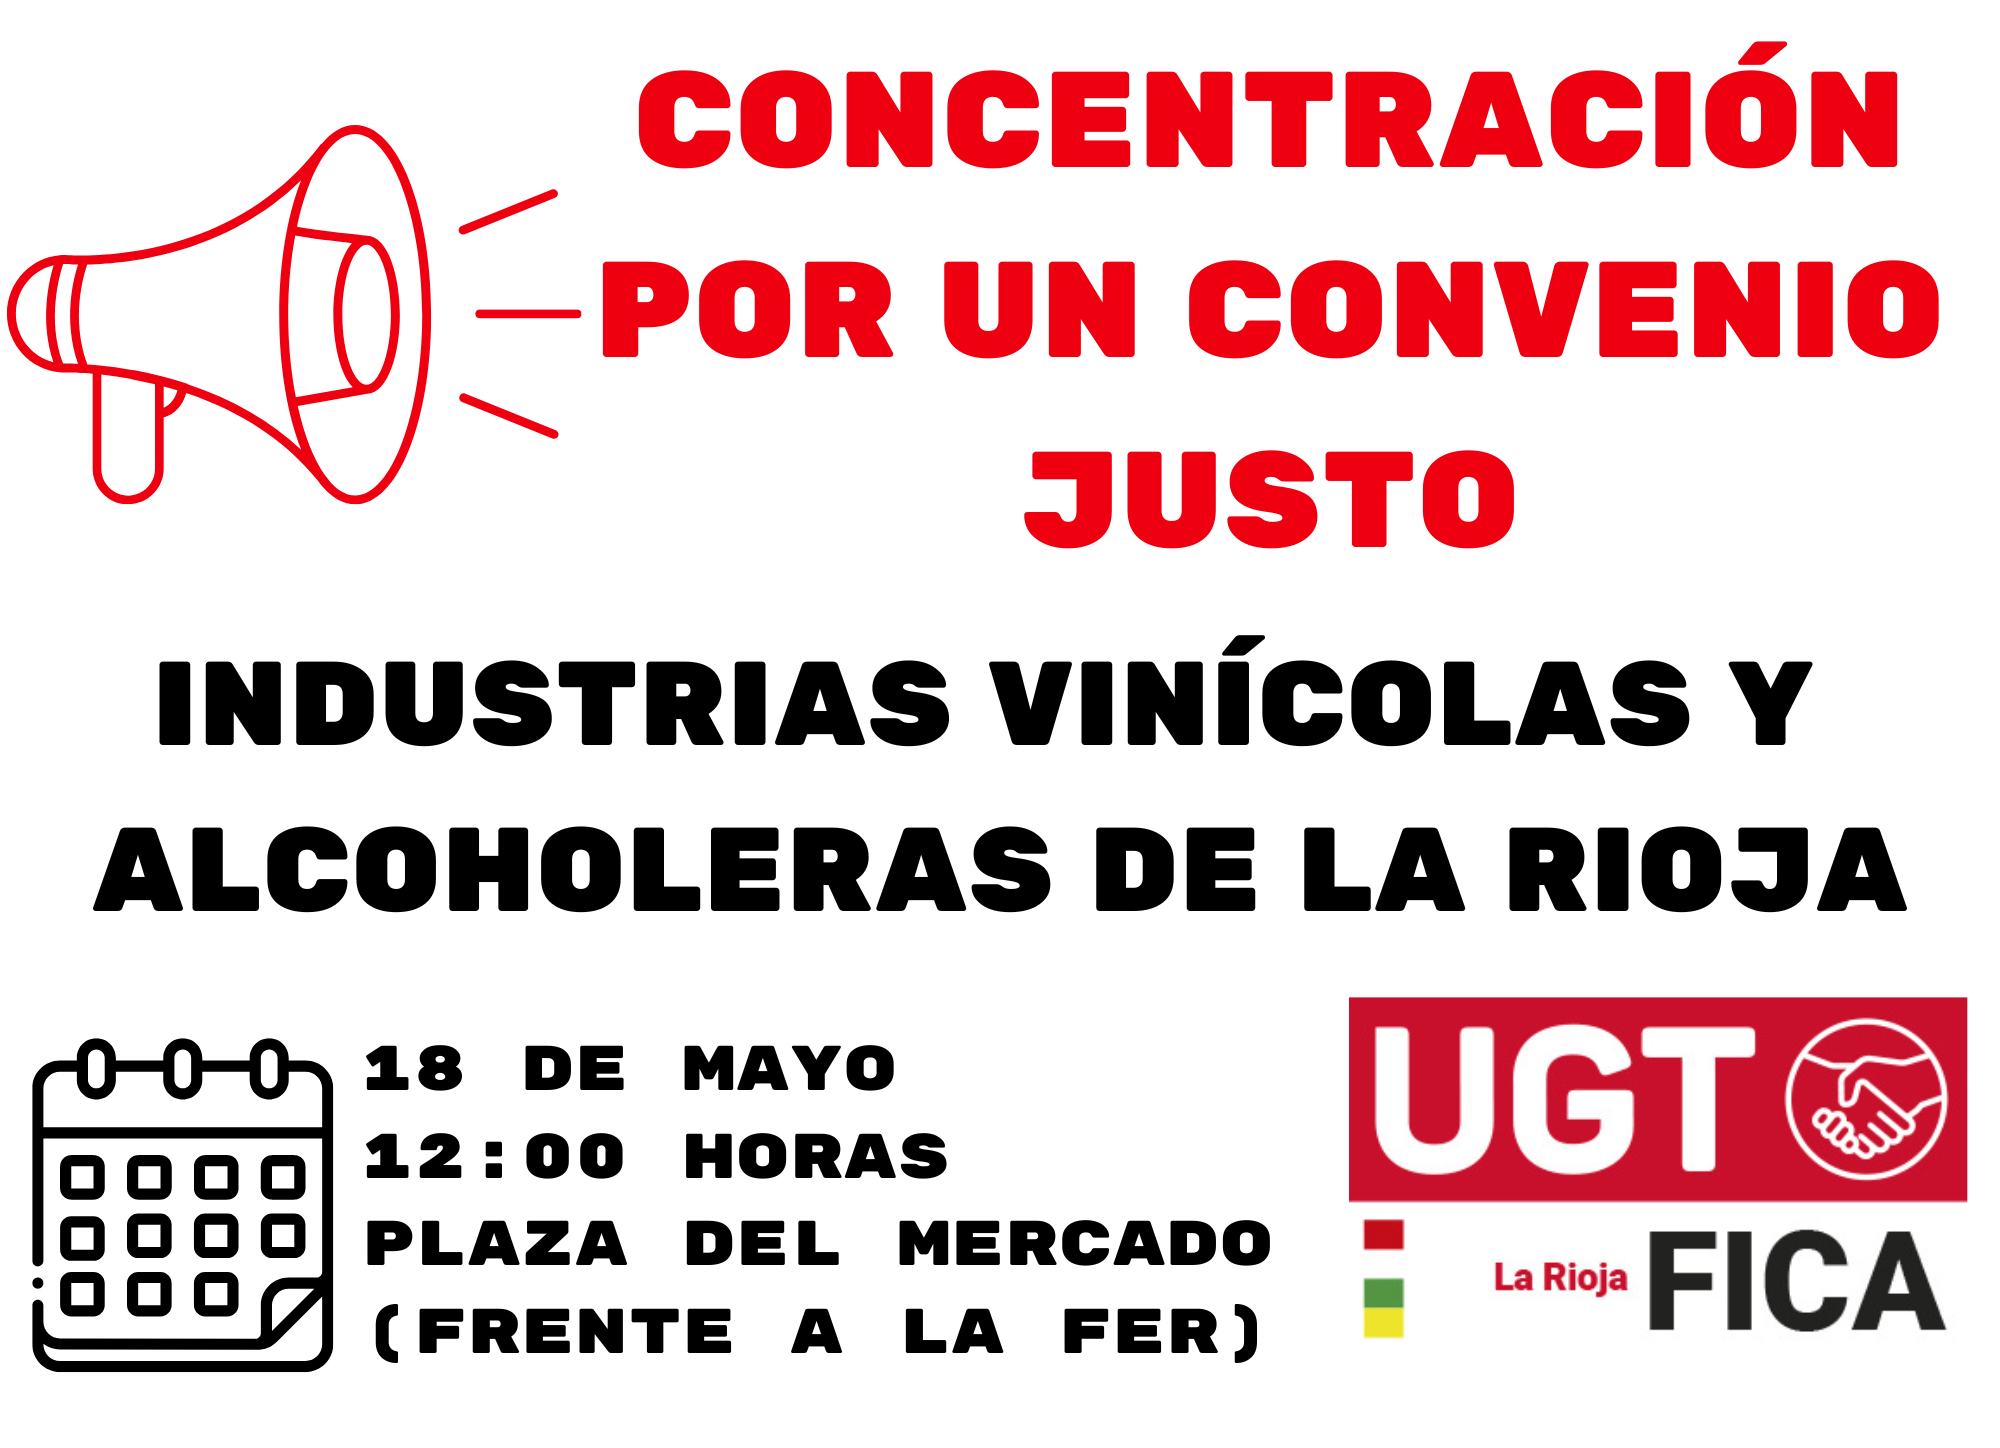 Las personas trabajadoras de la industria del vino de La Rioja se concentrarán frente a la patronal para exigir un convenio que recupere su poder adquisitivo